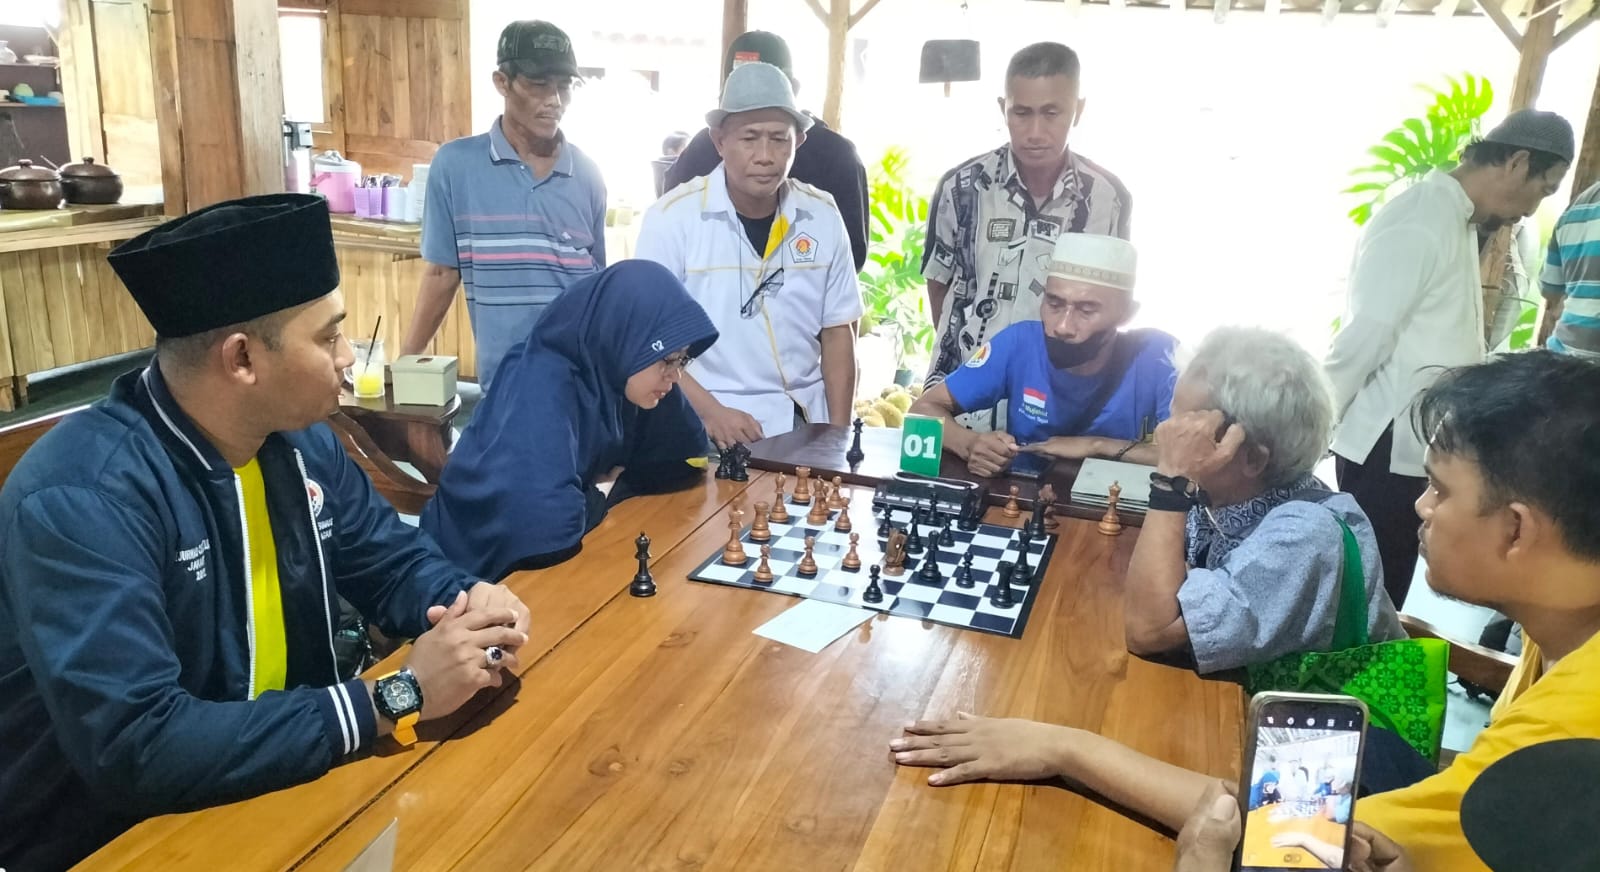  82 Peserta Ikut Turnamen Catur di Kabupaten Tegal, Wakil Ketua Komisi IV Singgung Sekolah Gratis 